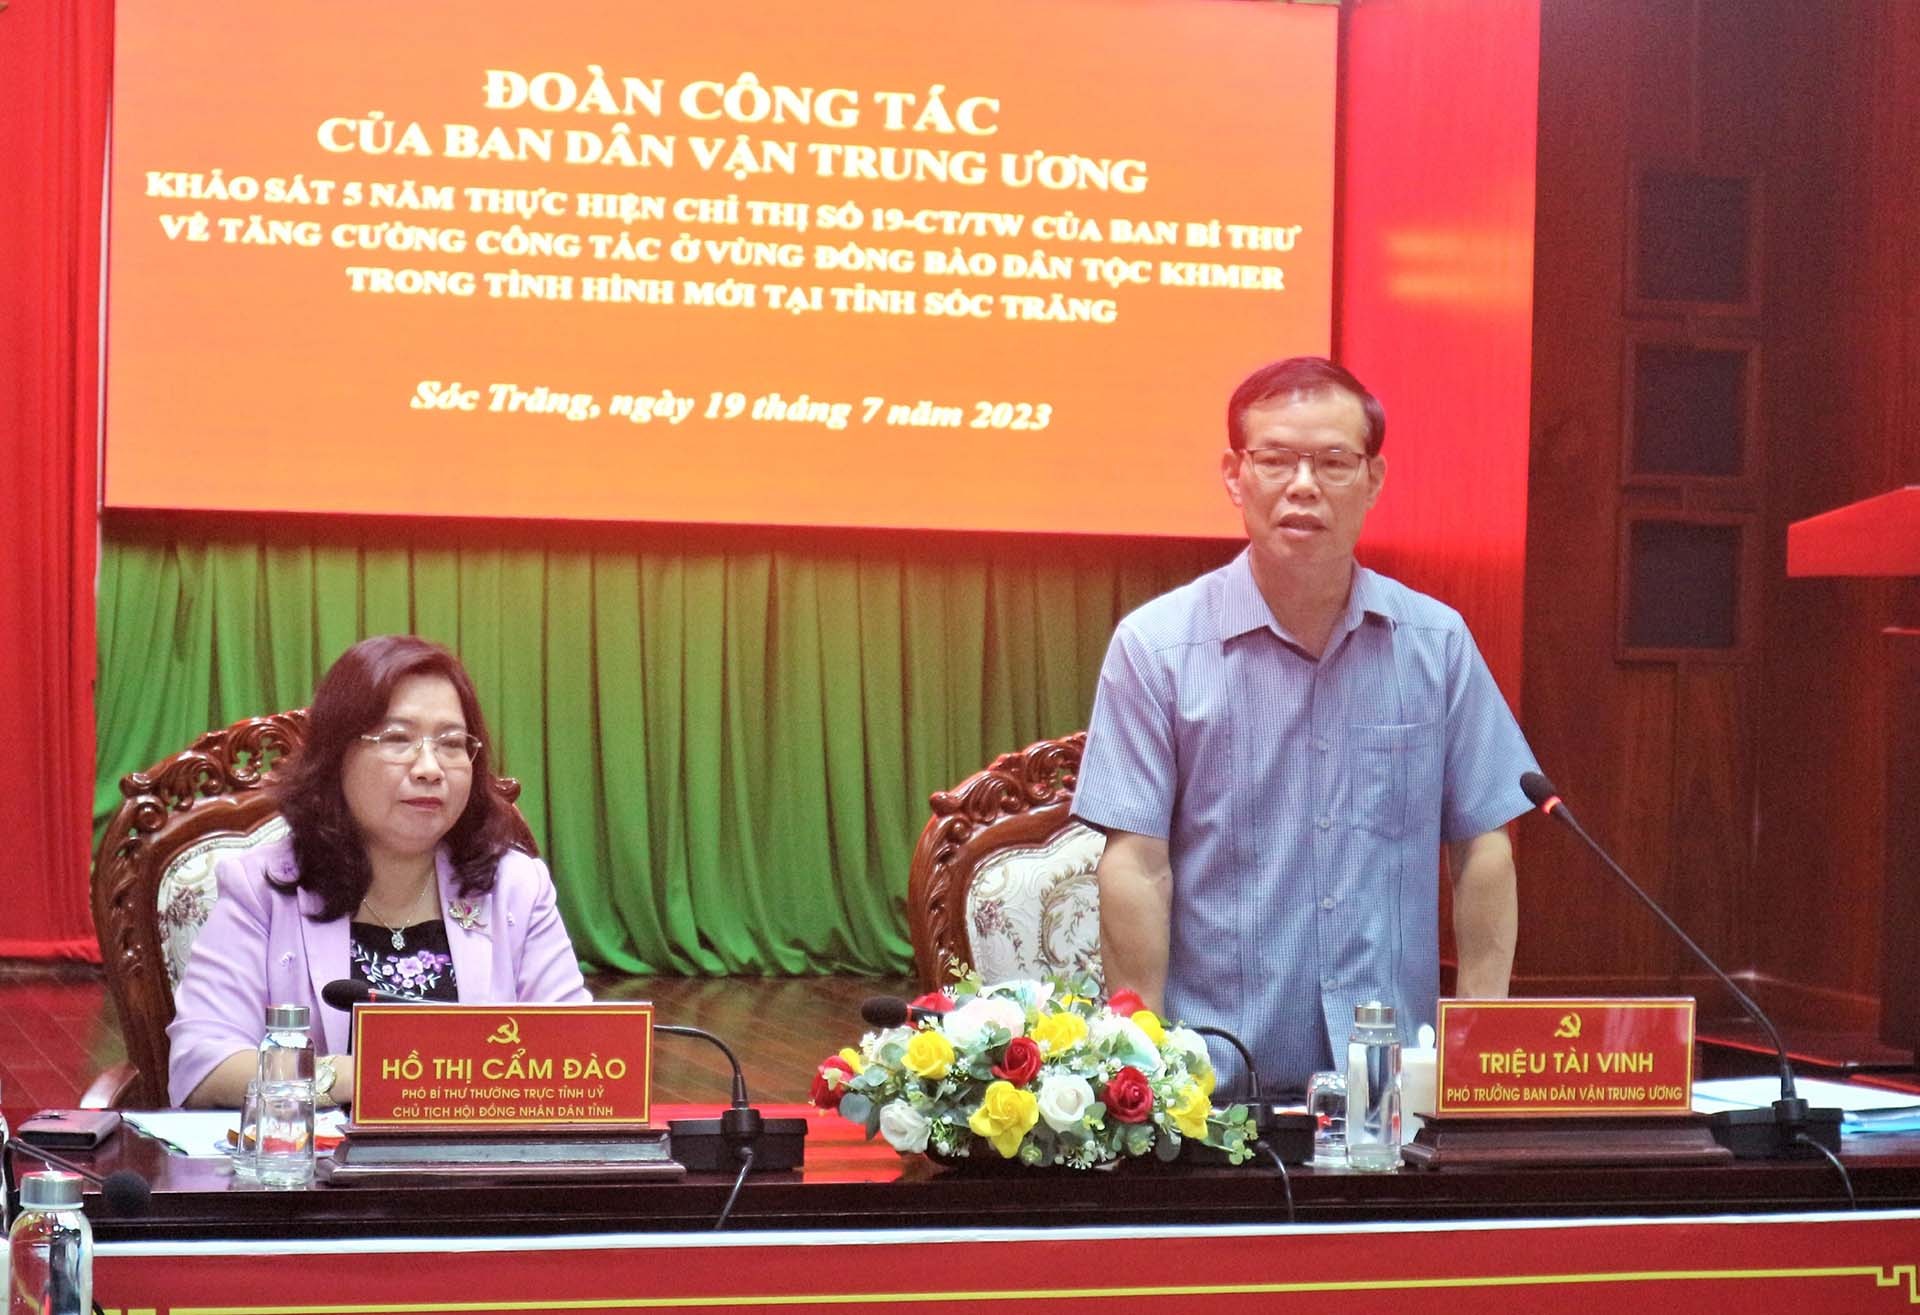 Phó Trưởng ban Dân vận Trung ương Triệu Tài Vinh phát biểu tại buổi làm việc.